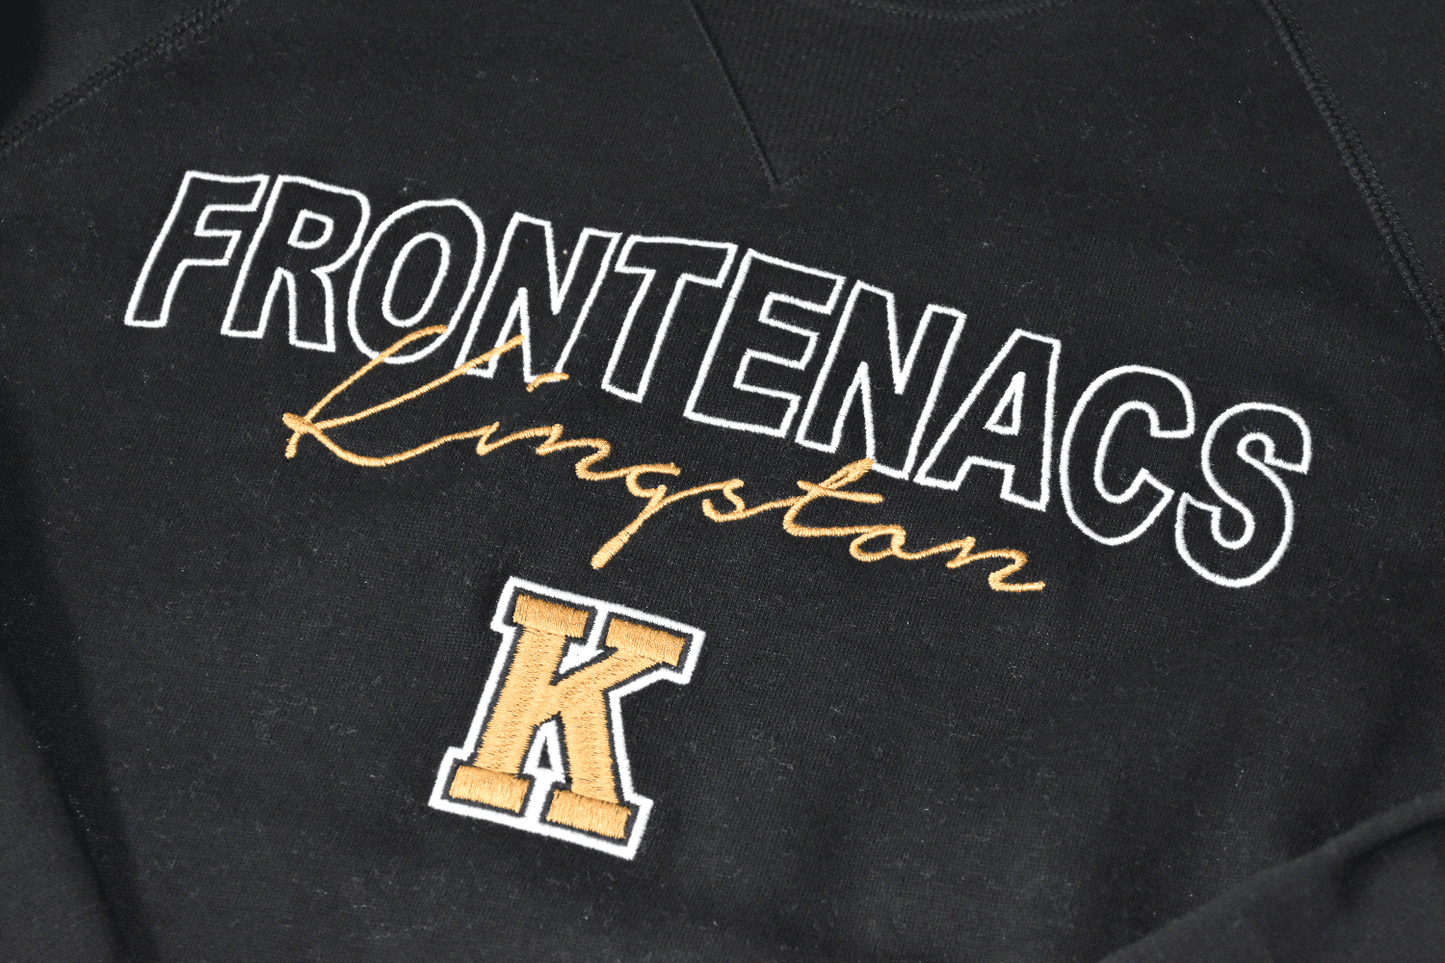 Campus Crew Kingston Frontenacs Fleece Sweatshirt